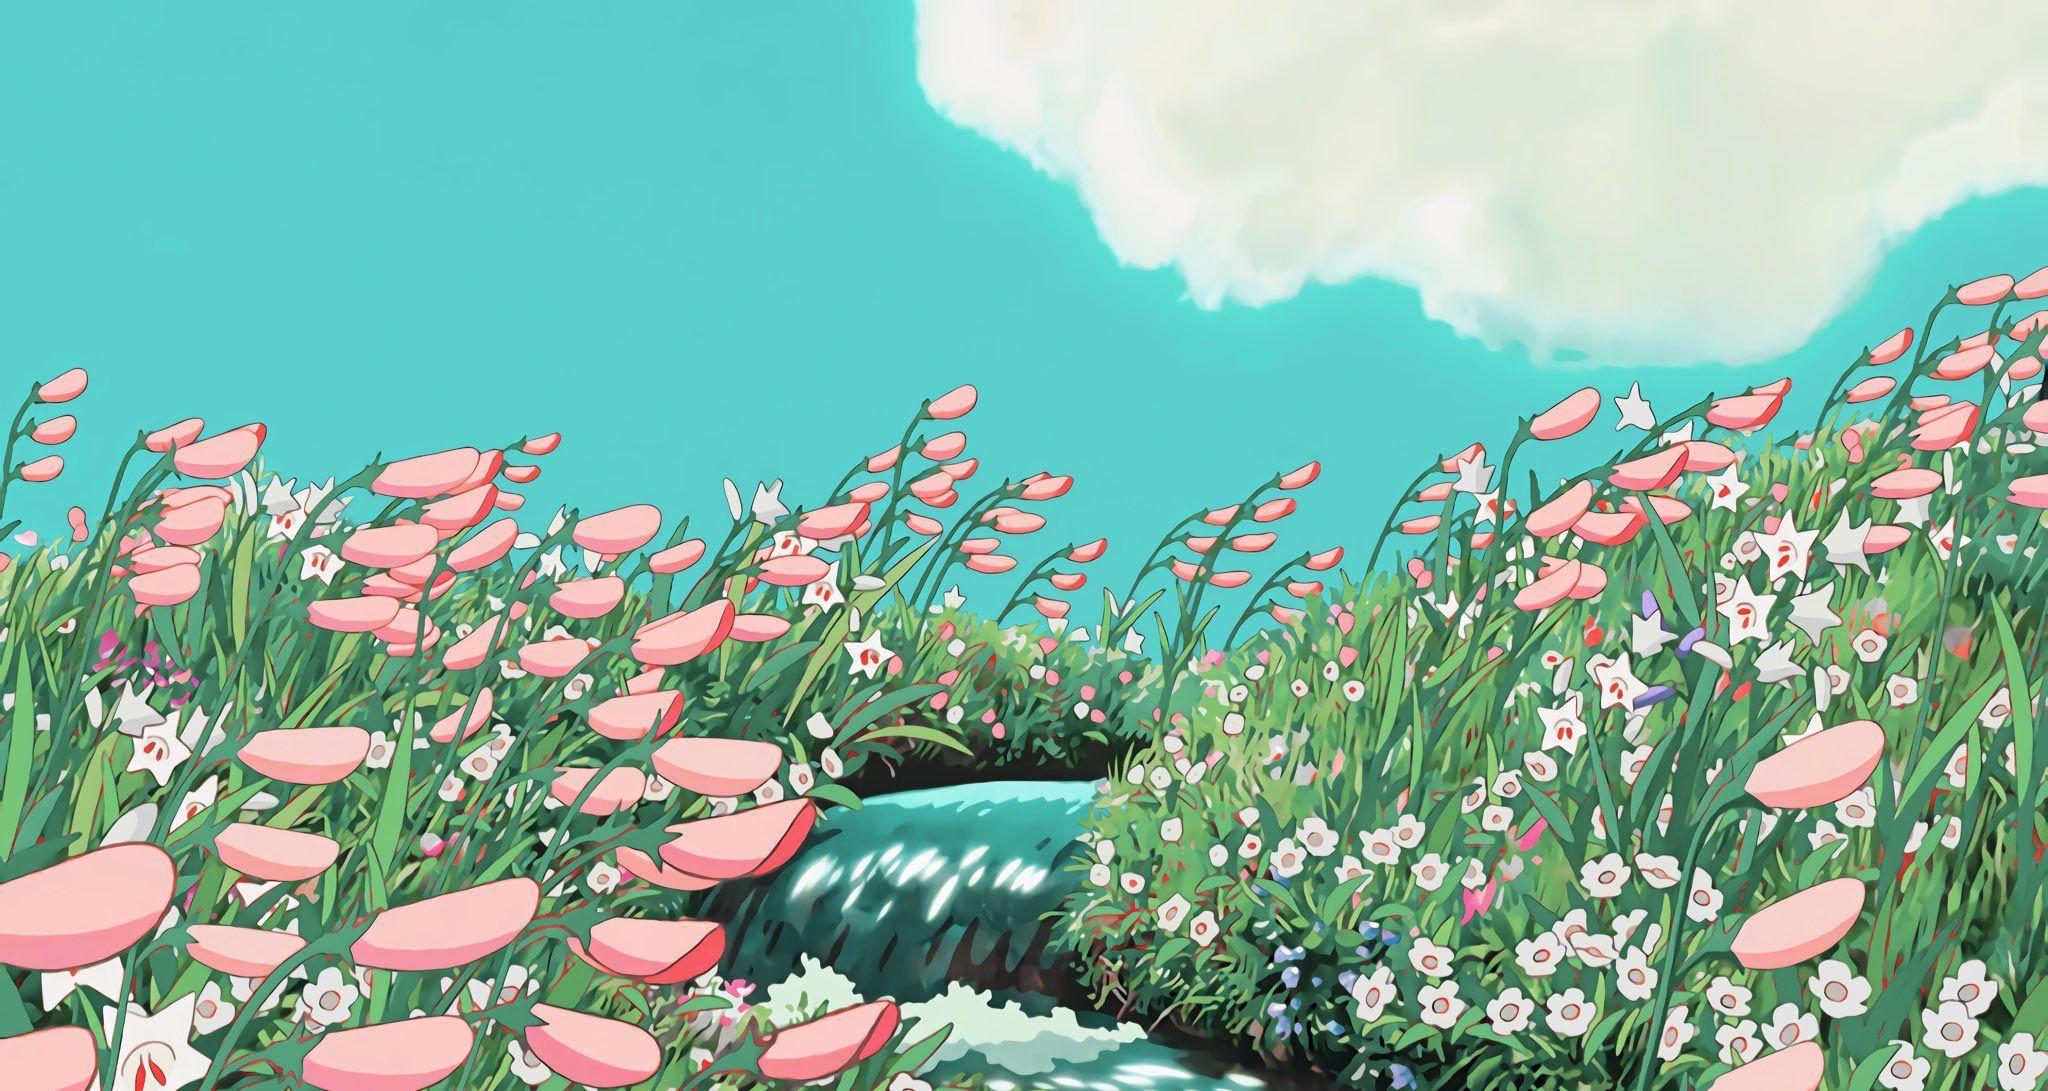 Aesthetic Studio Ghibli Wallpapers  Wallpaper Cave